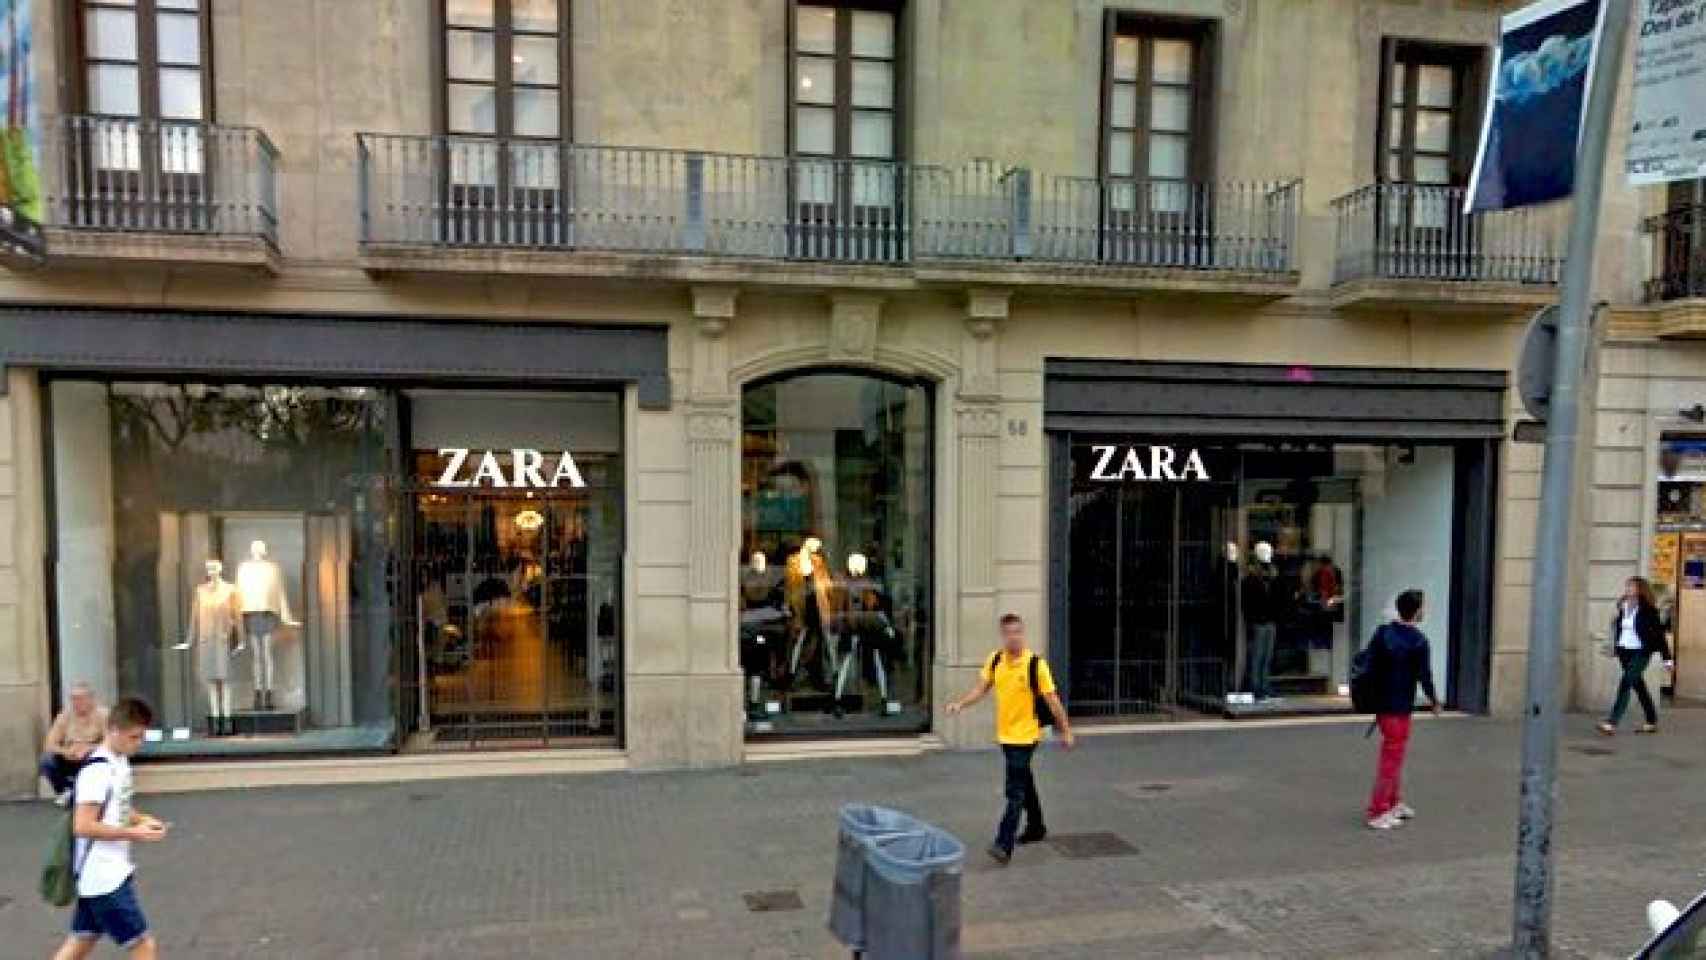 Una de las tiendas que vende Inditex, la de Zara de calle Pelayo de Barcelona, aunque continuará como arrendatario del local / CG